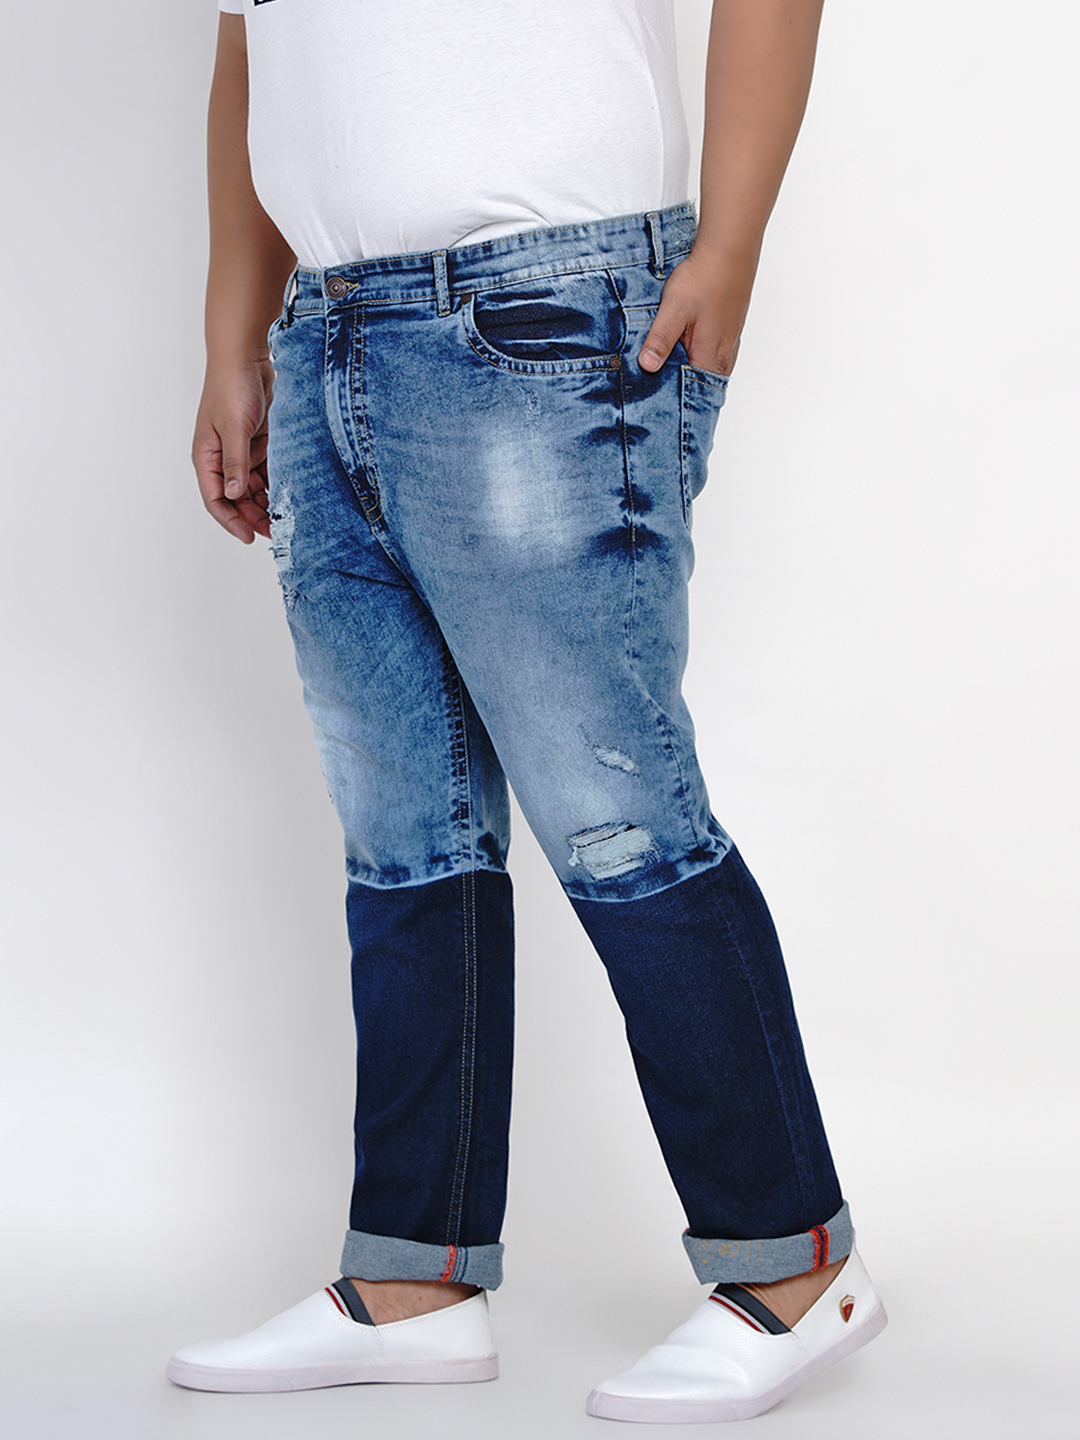 bottomwear/jeans/JPJ6000/jpj6000-4.jpg